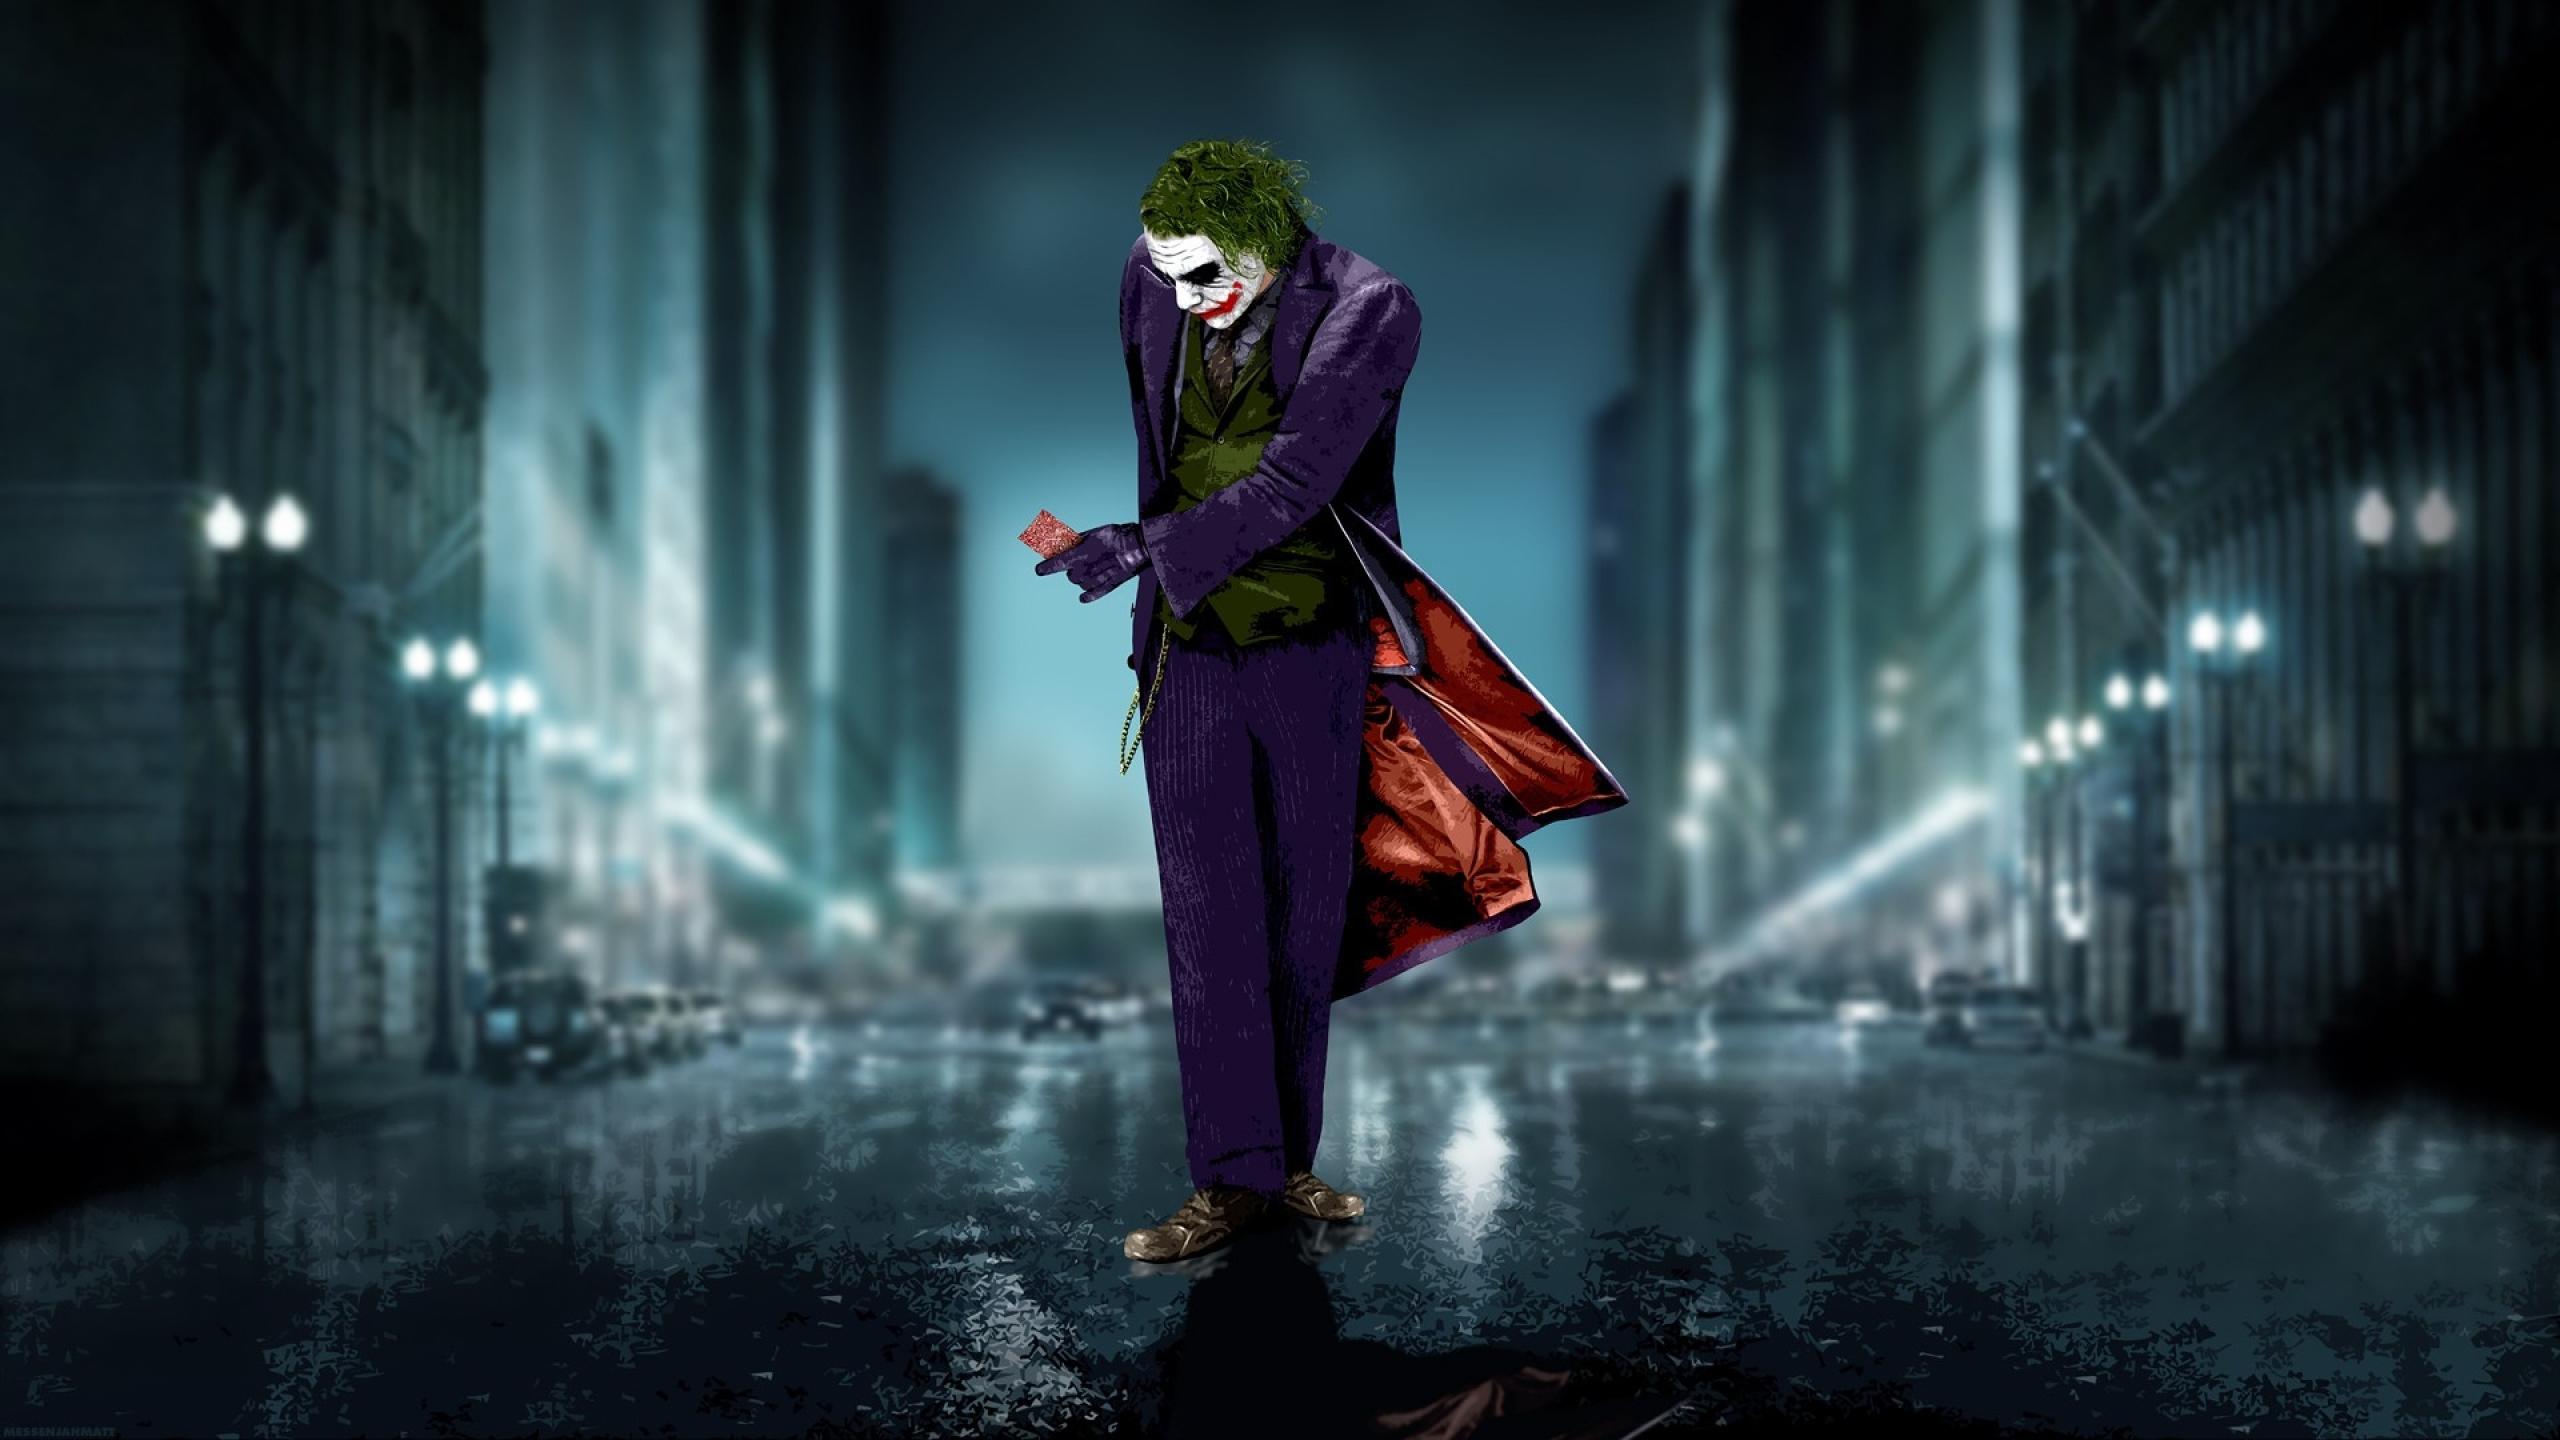 The Joker Heath Ledger Wallpaper